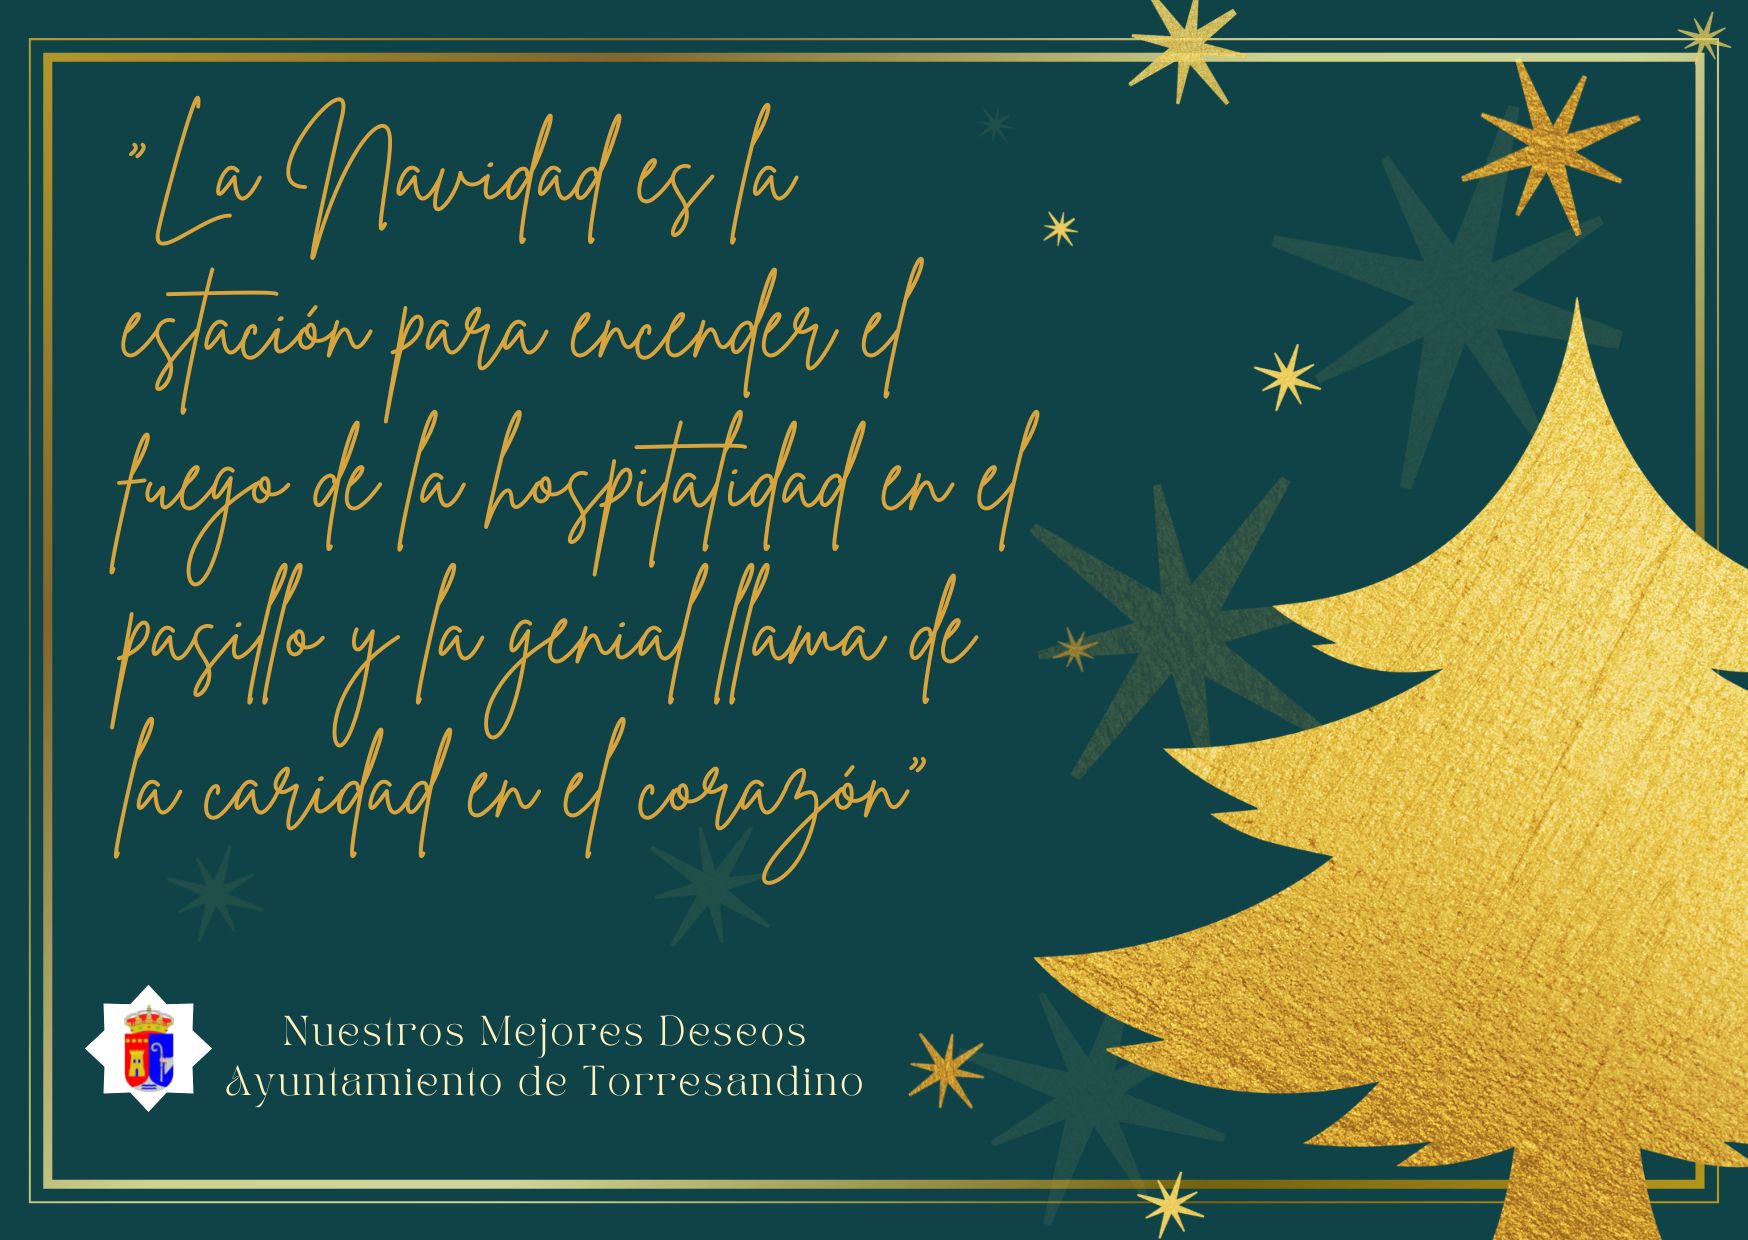 Felicitación de navidad del ayuntamiento de torresandino